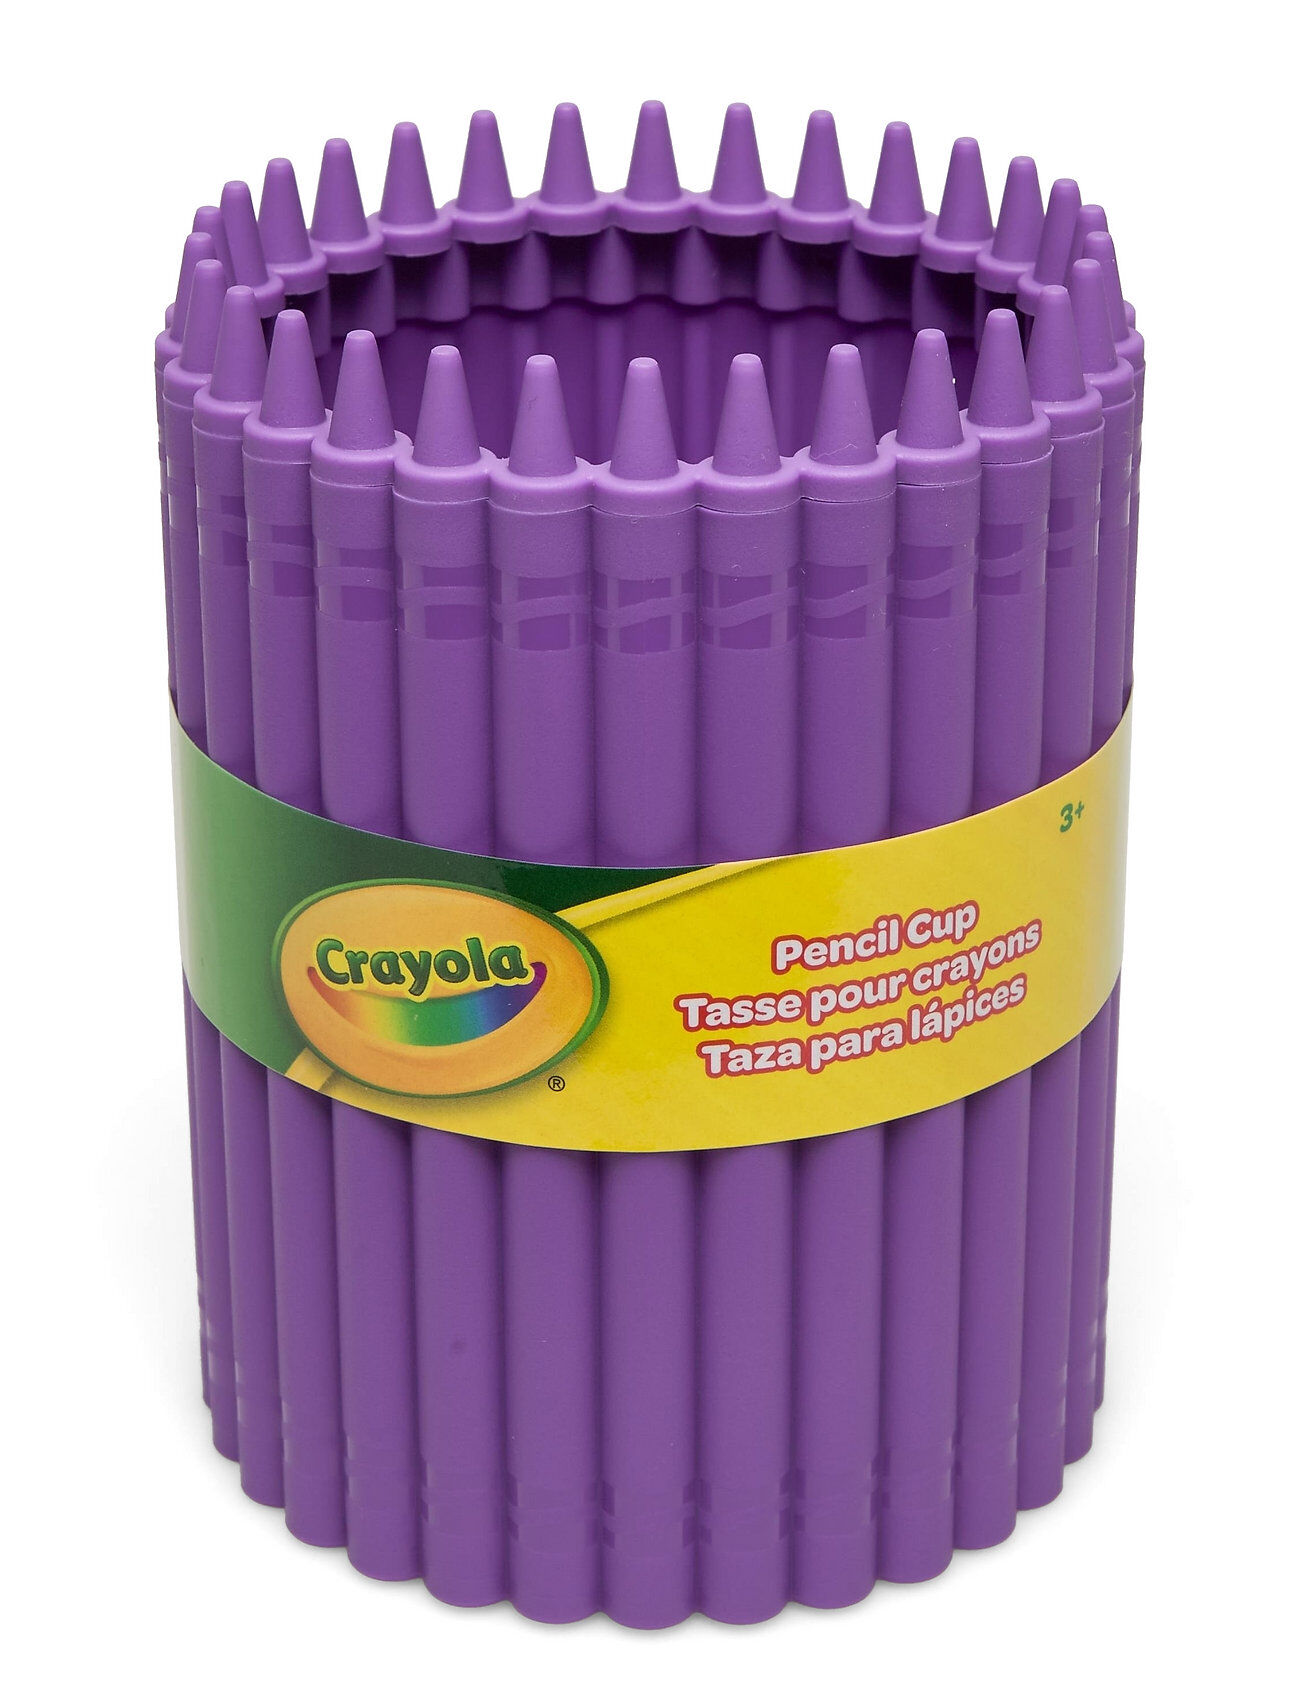 Crayola Pencil Cup Home Kids Decor Storage Lilla CRAYOLA